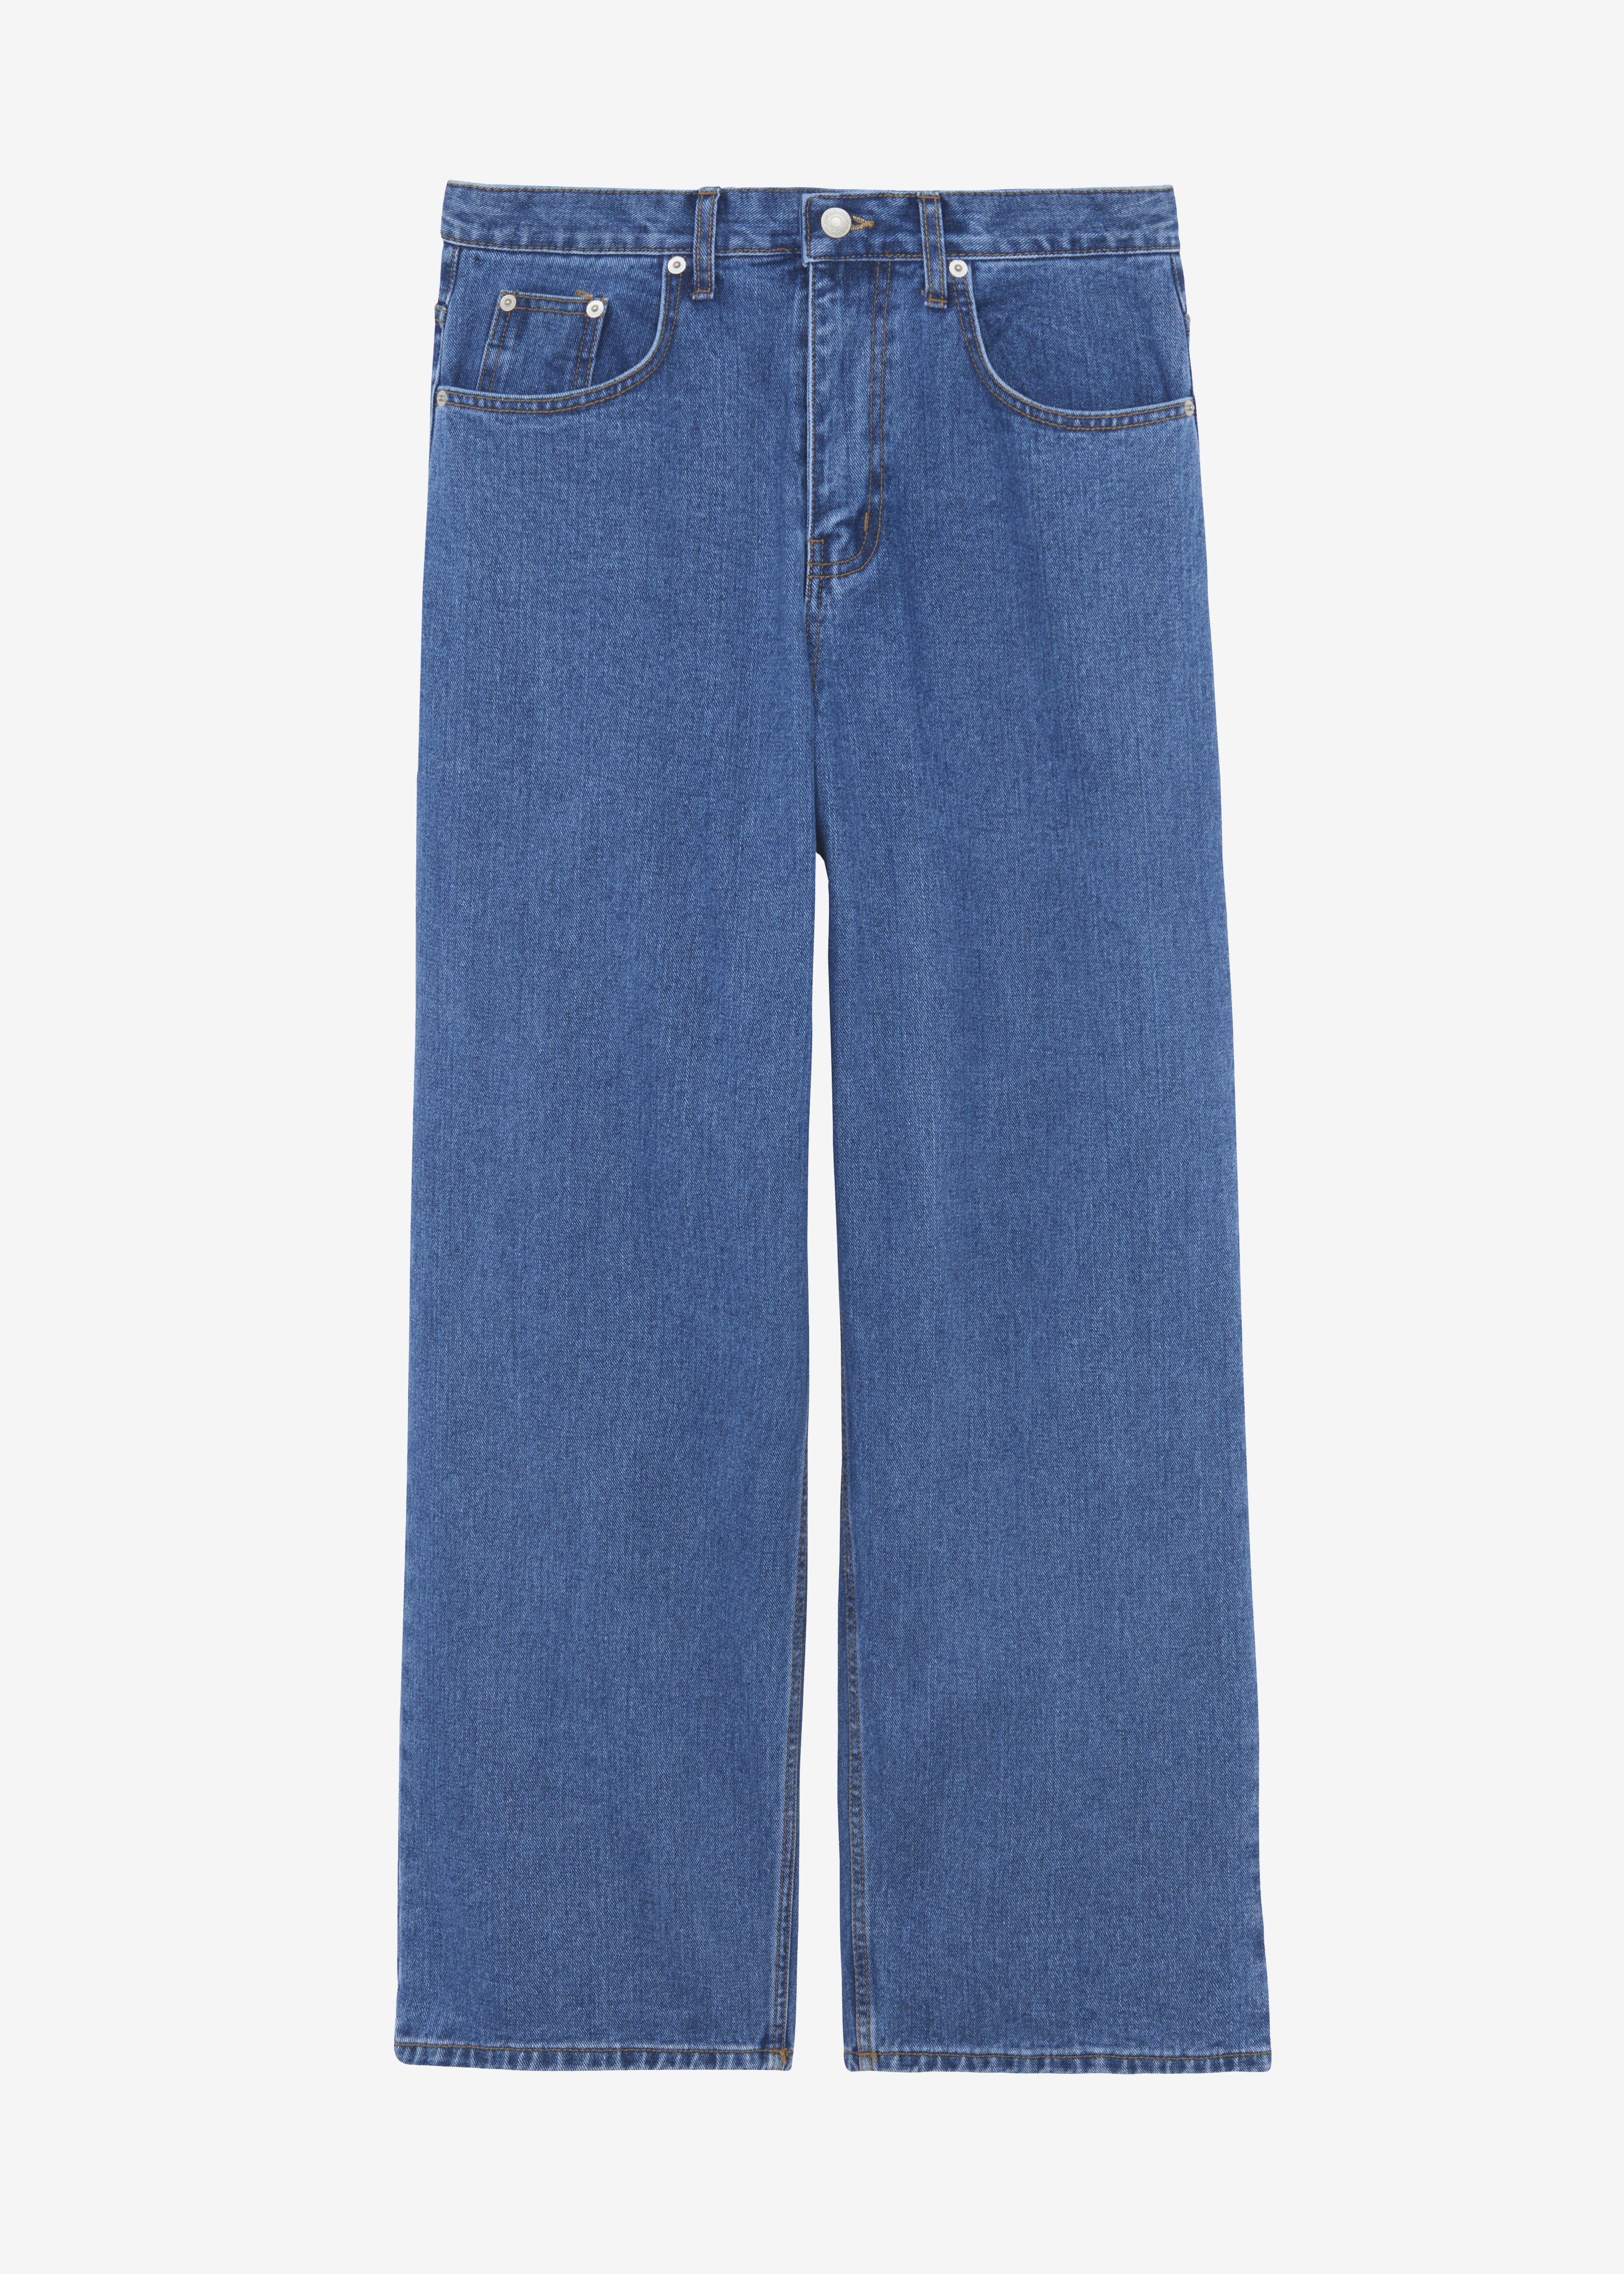 Connor Jeans - Medium Wash - 8